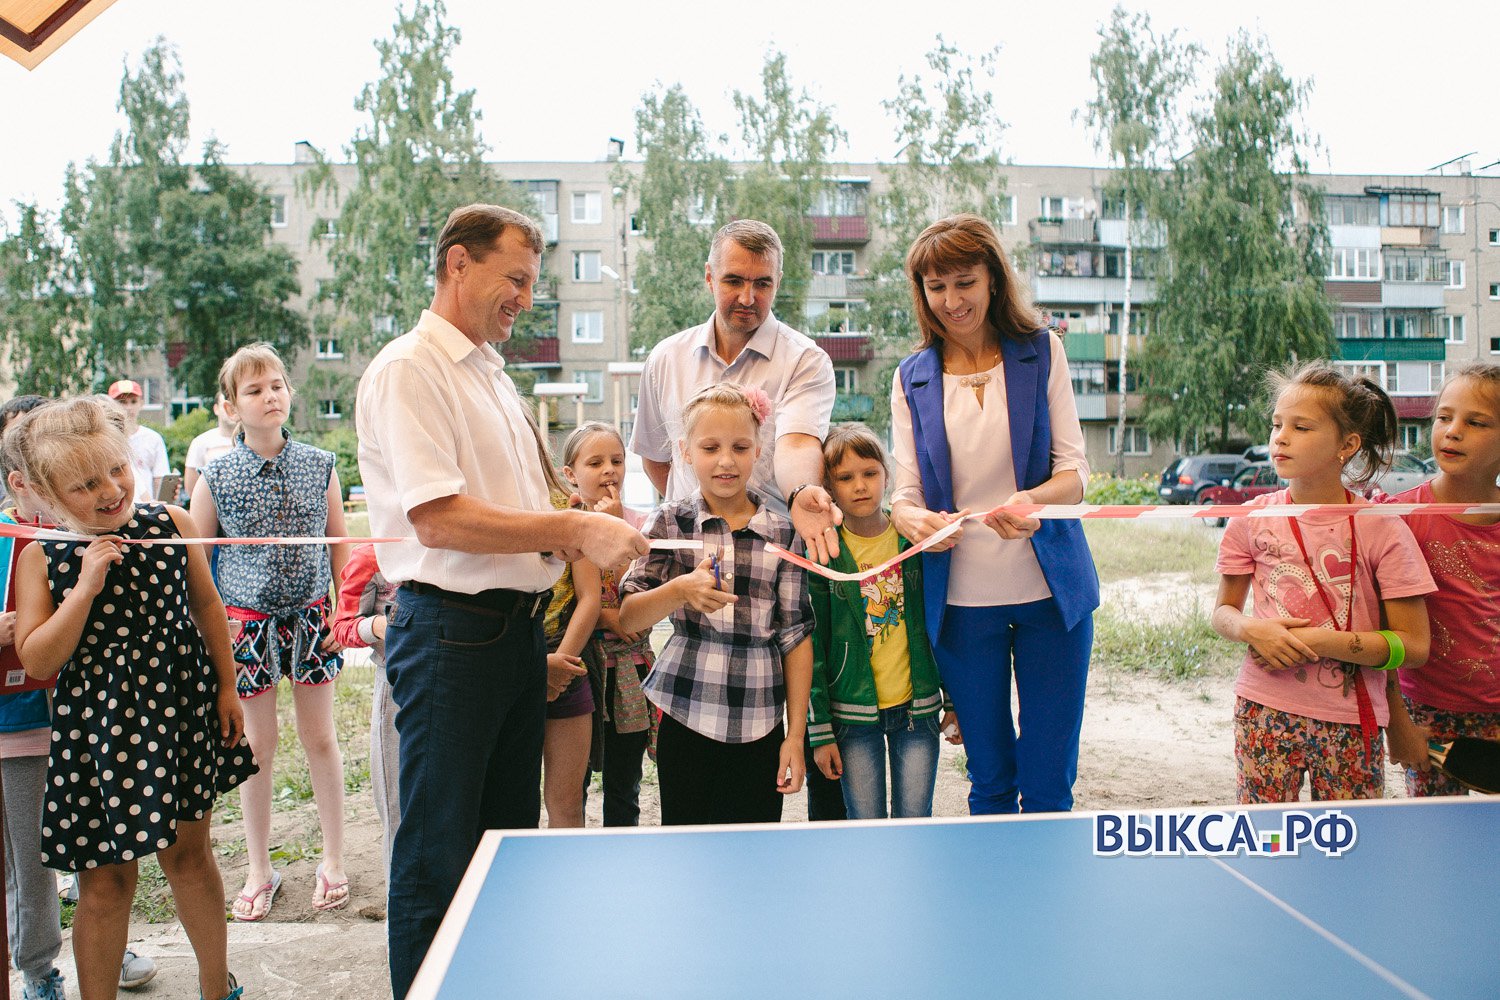 ОМК-Партнерство: в микрорайоне Гоголя открыли площадку для настольного тенниса